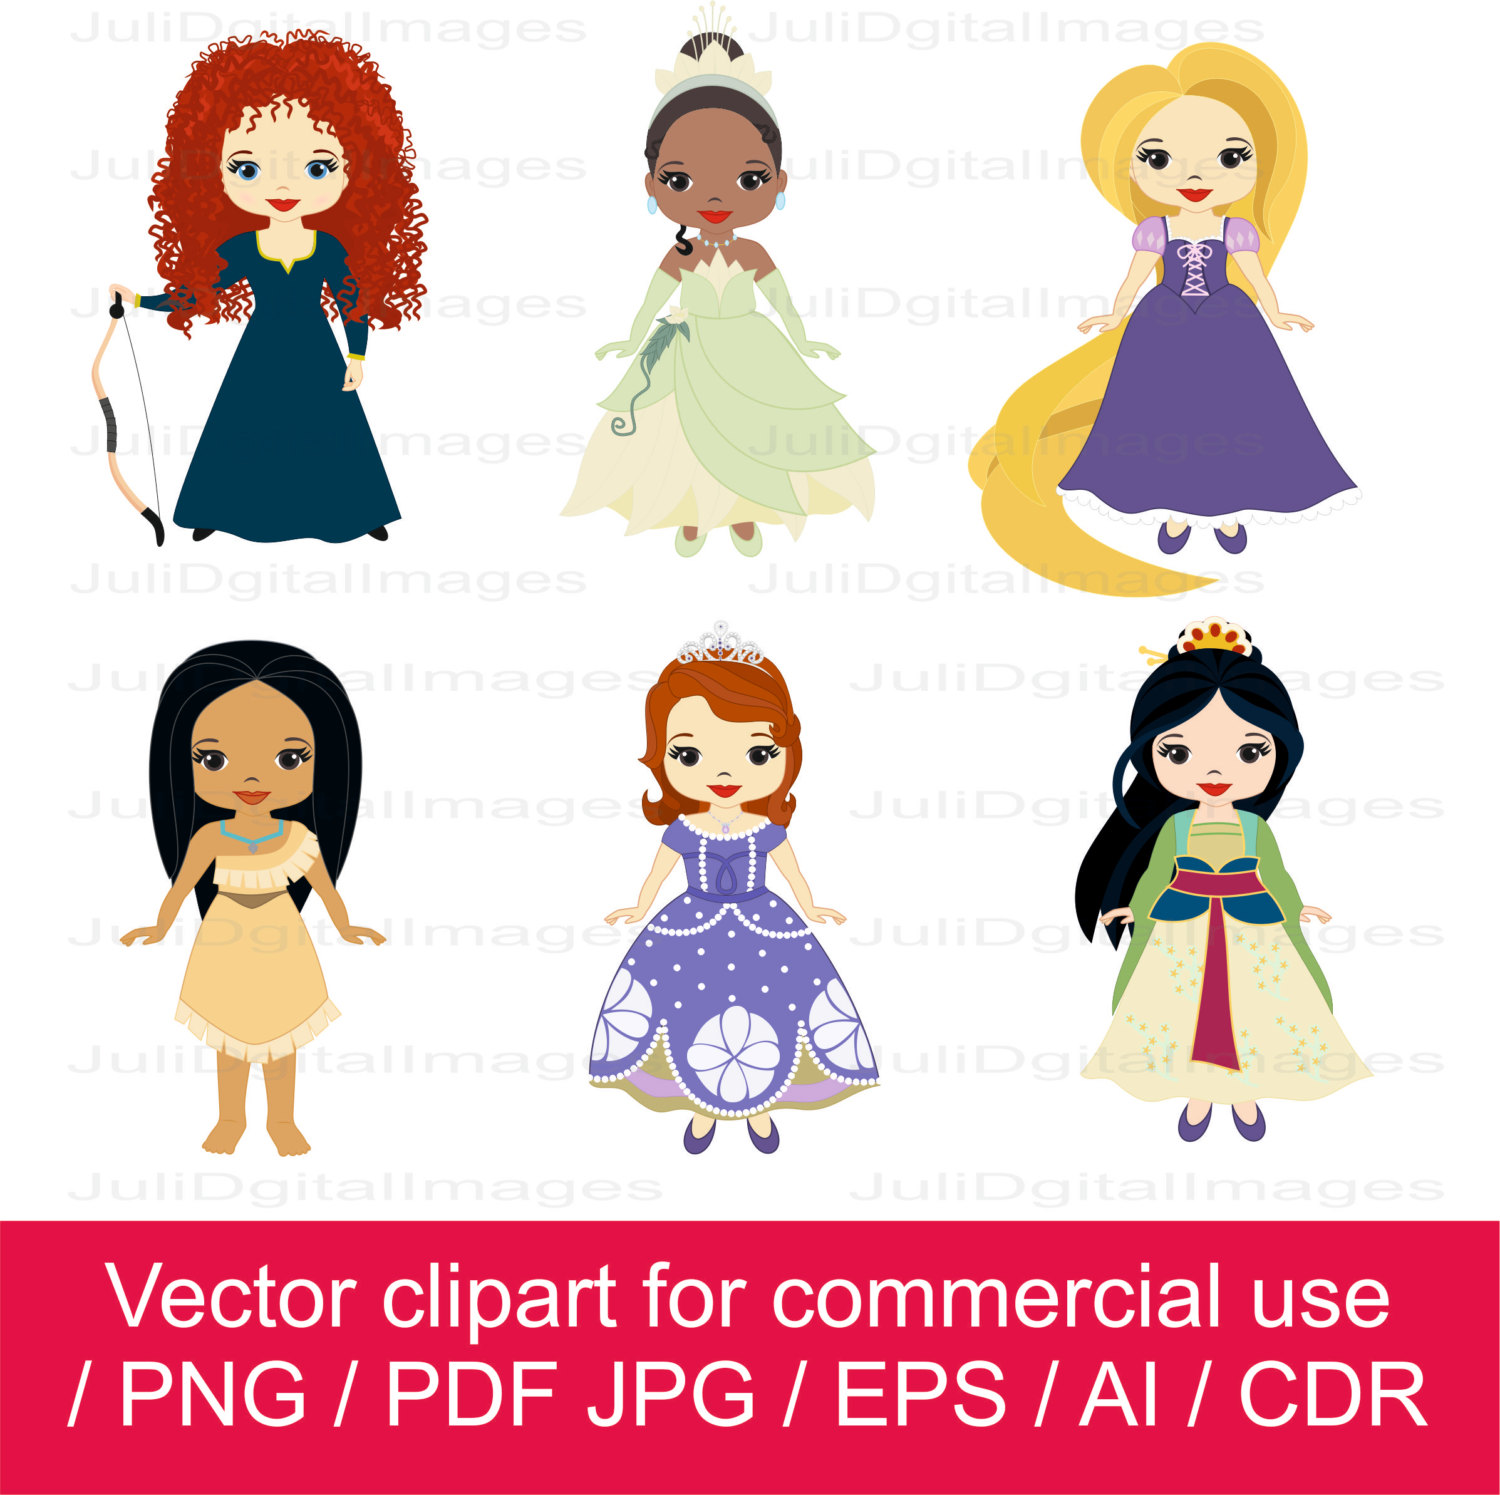 Princesses clipart / little princess clipart / princess vector